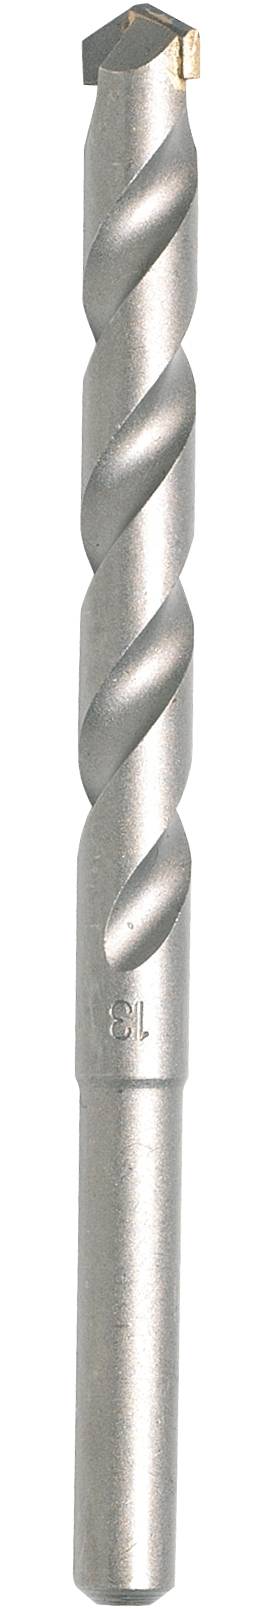 Makita D-05262 Carbide metal Masonry twist drill bit 6 mm Total ...